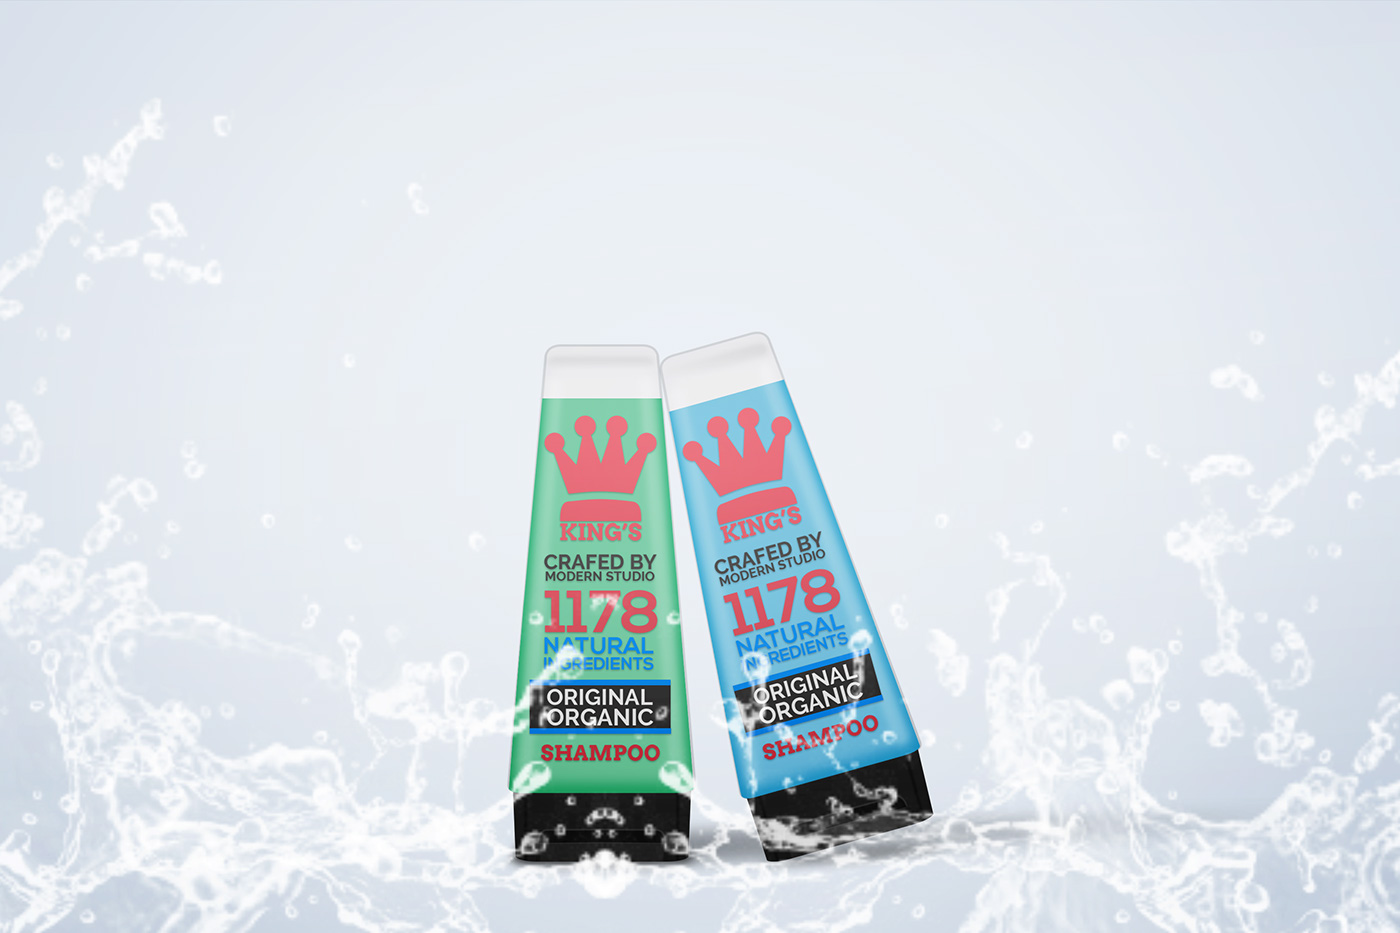 shampoo gel shower gel bottle Packaging Mockup psd realistic